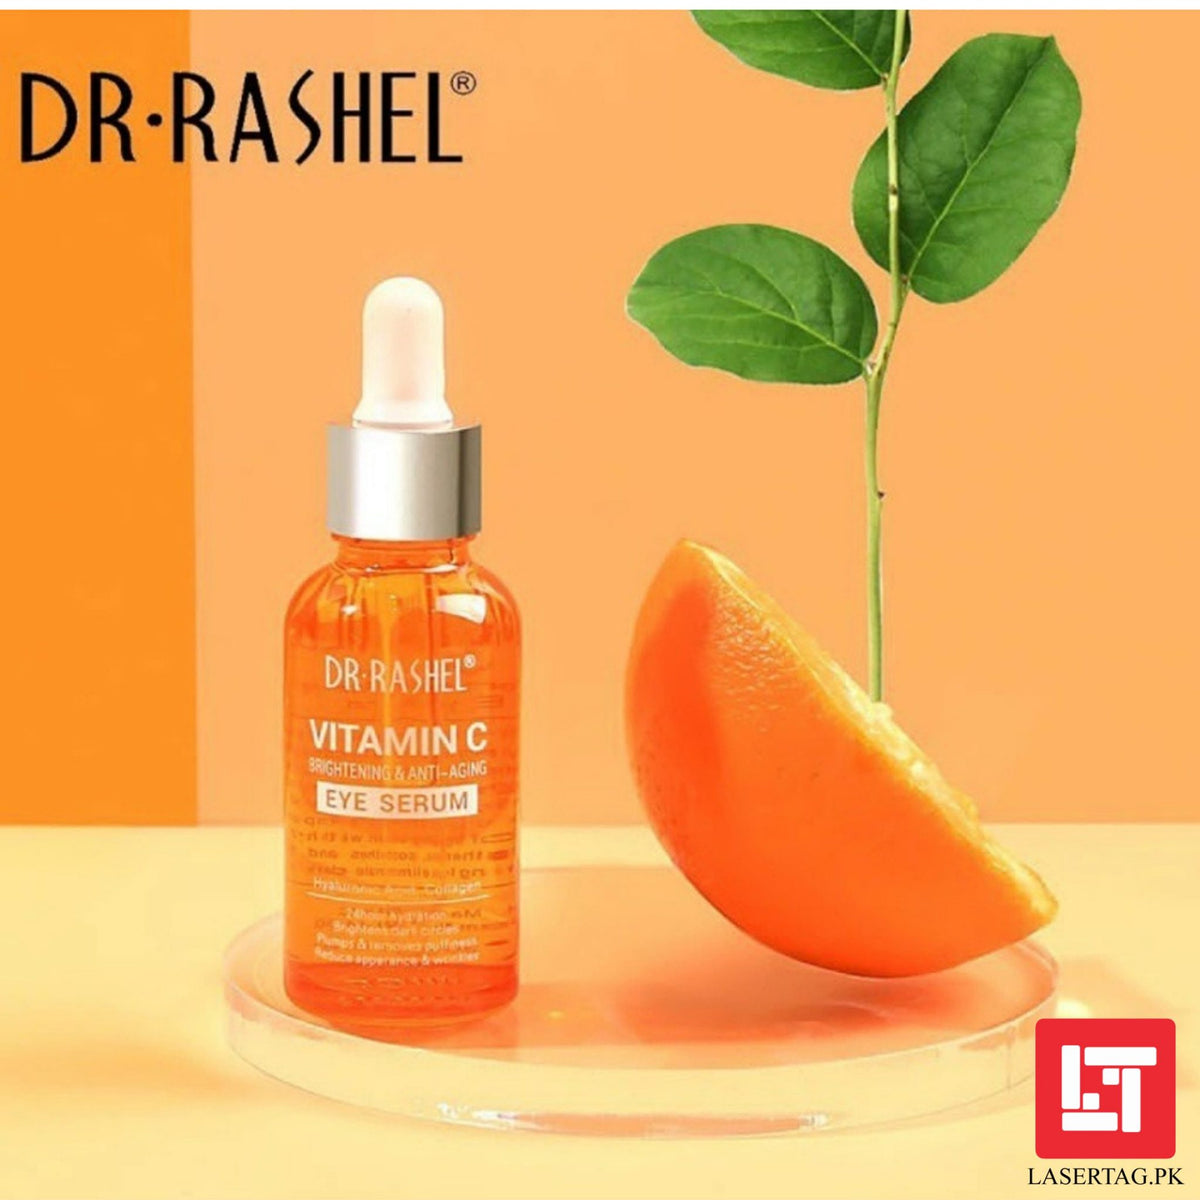 Dr Rashel Vitamin C Eye Serum Brightening &amp; Anti Aging 30ml freeshipping - lasertag.pk